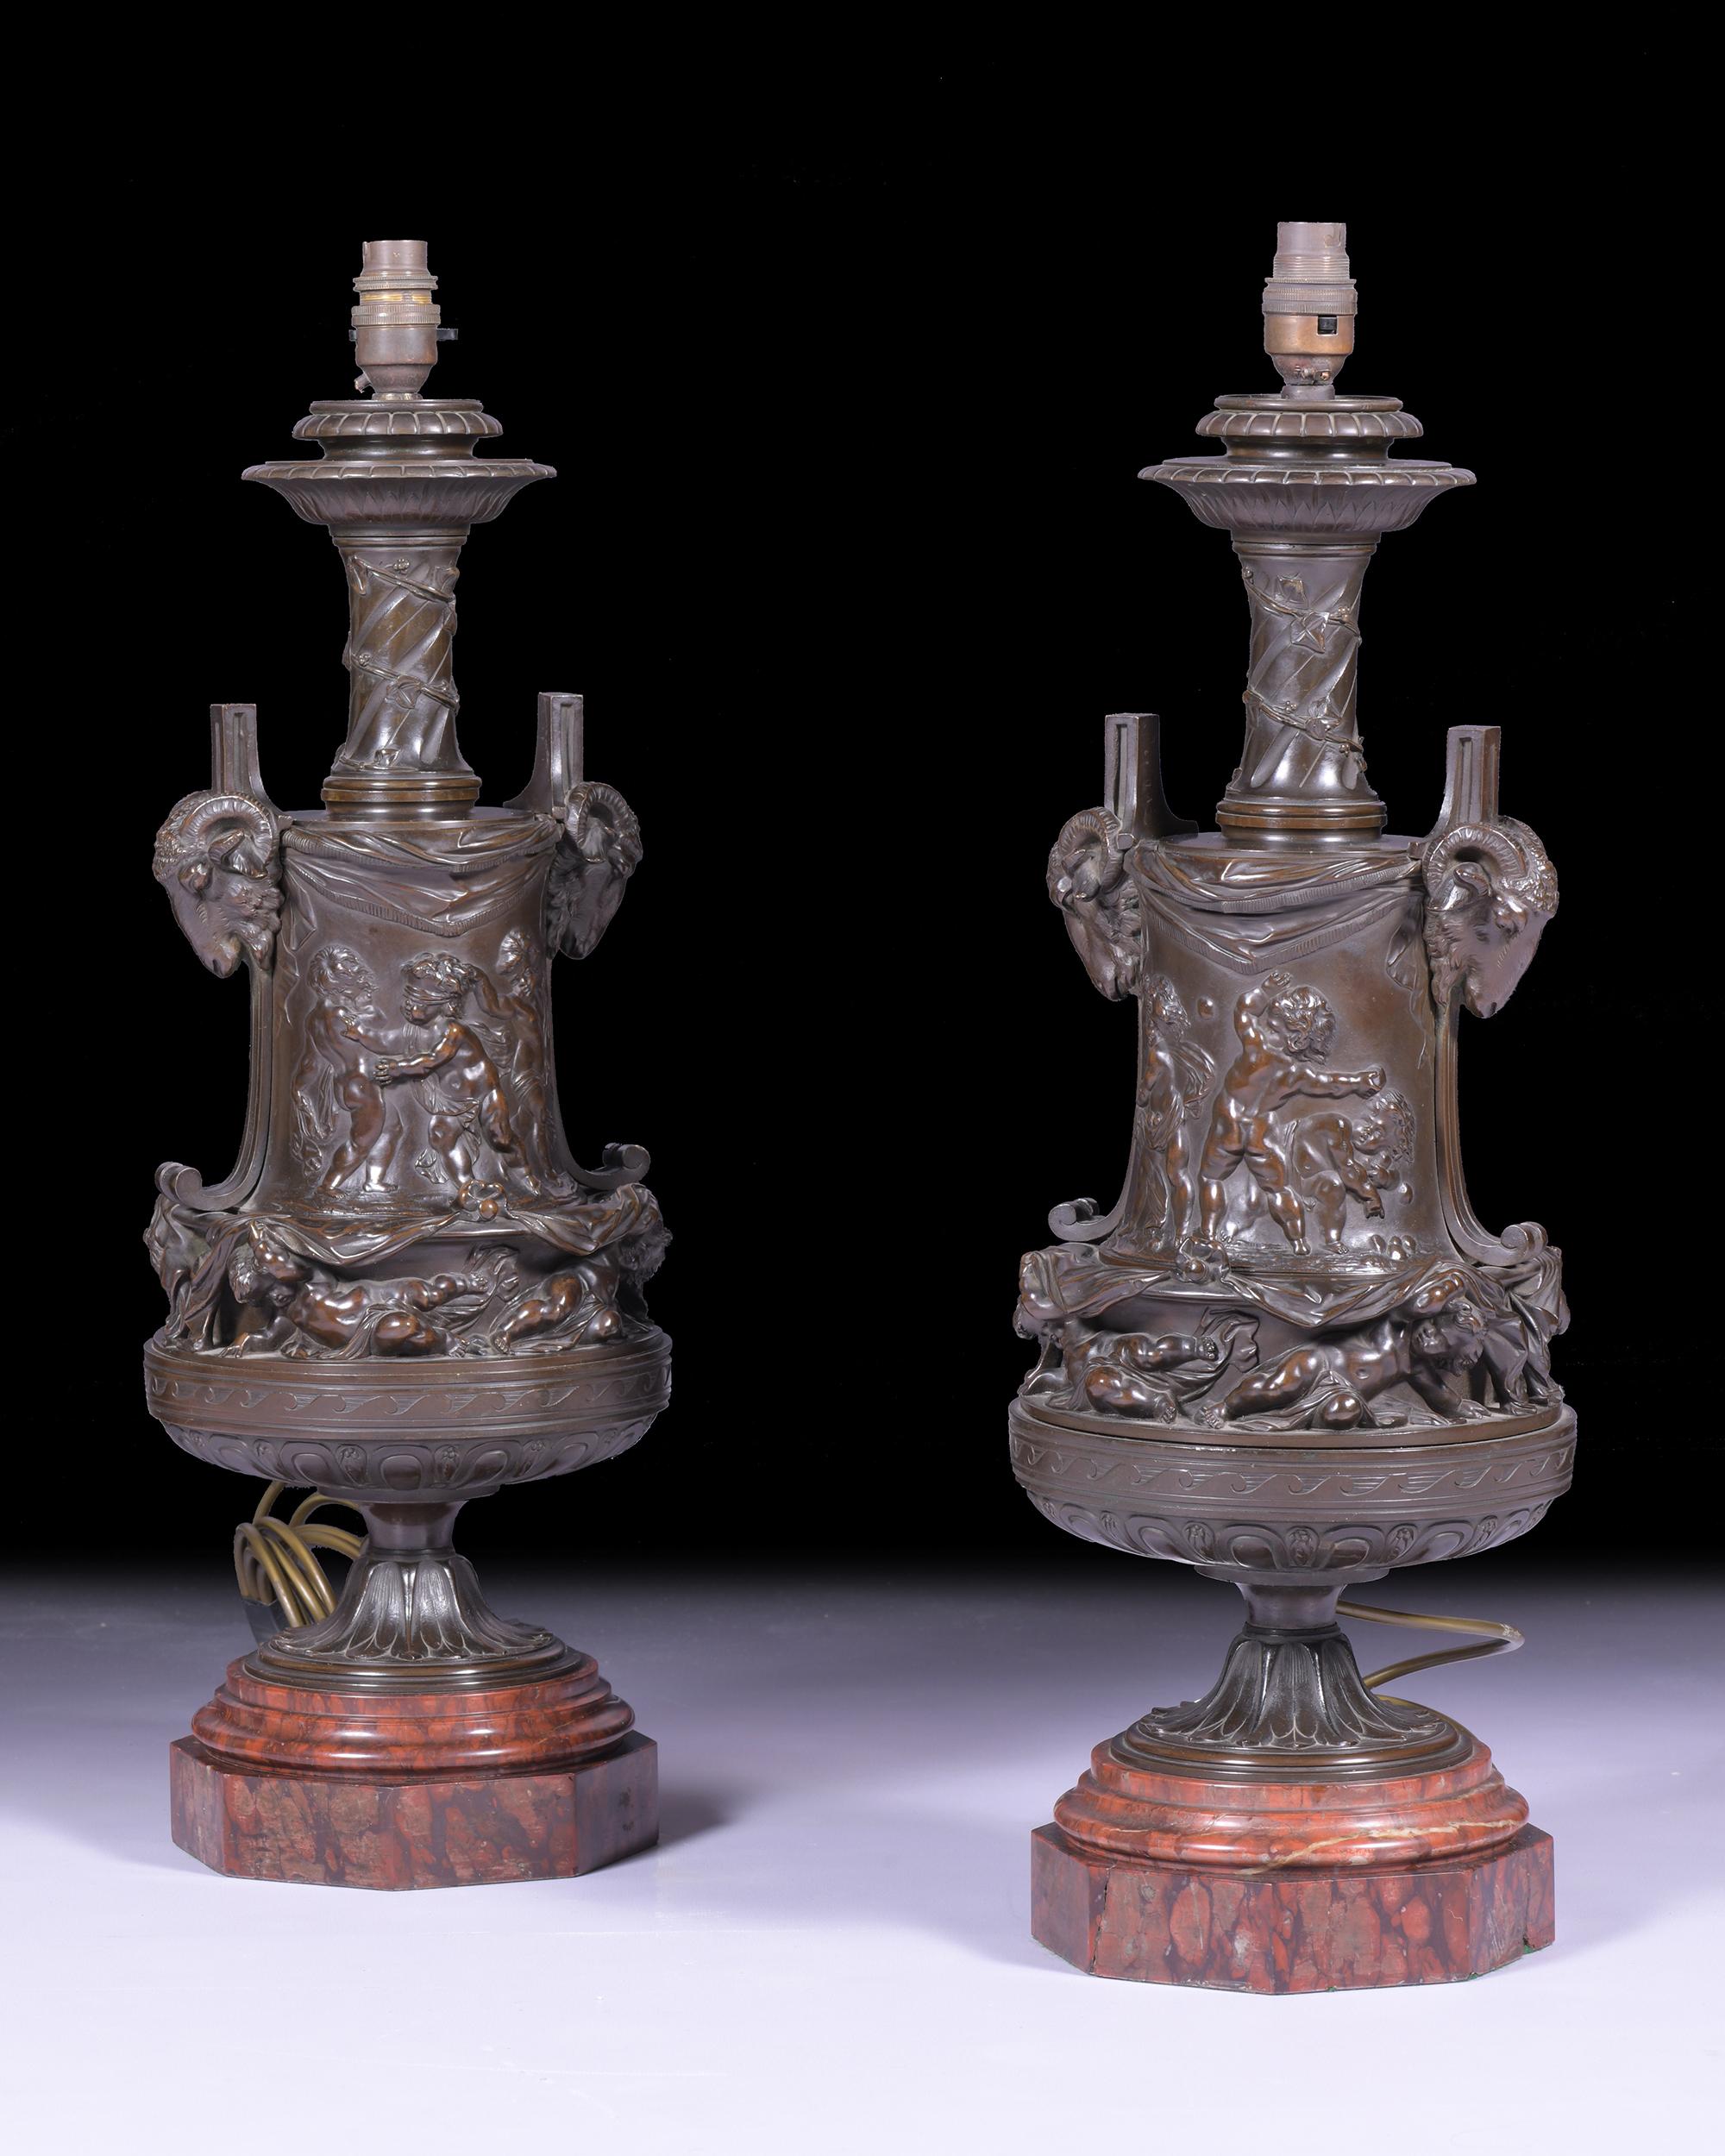 Une superbe paire de lampes en bronze du XIXe siècle, avec des scènes classiques représentant des chérubins gambadant en relief, flanqués de masques à tête de chèvre sur les côtés, sur des bases en marbre rouge à gradins se terminant sur une base de